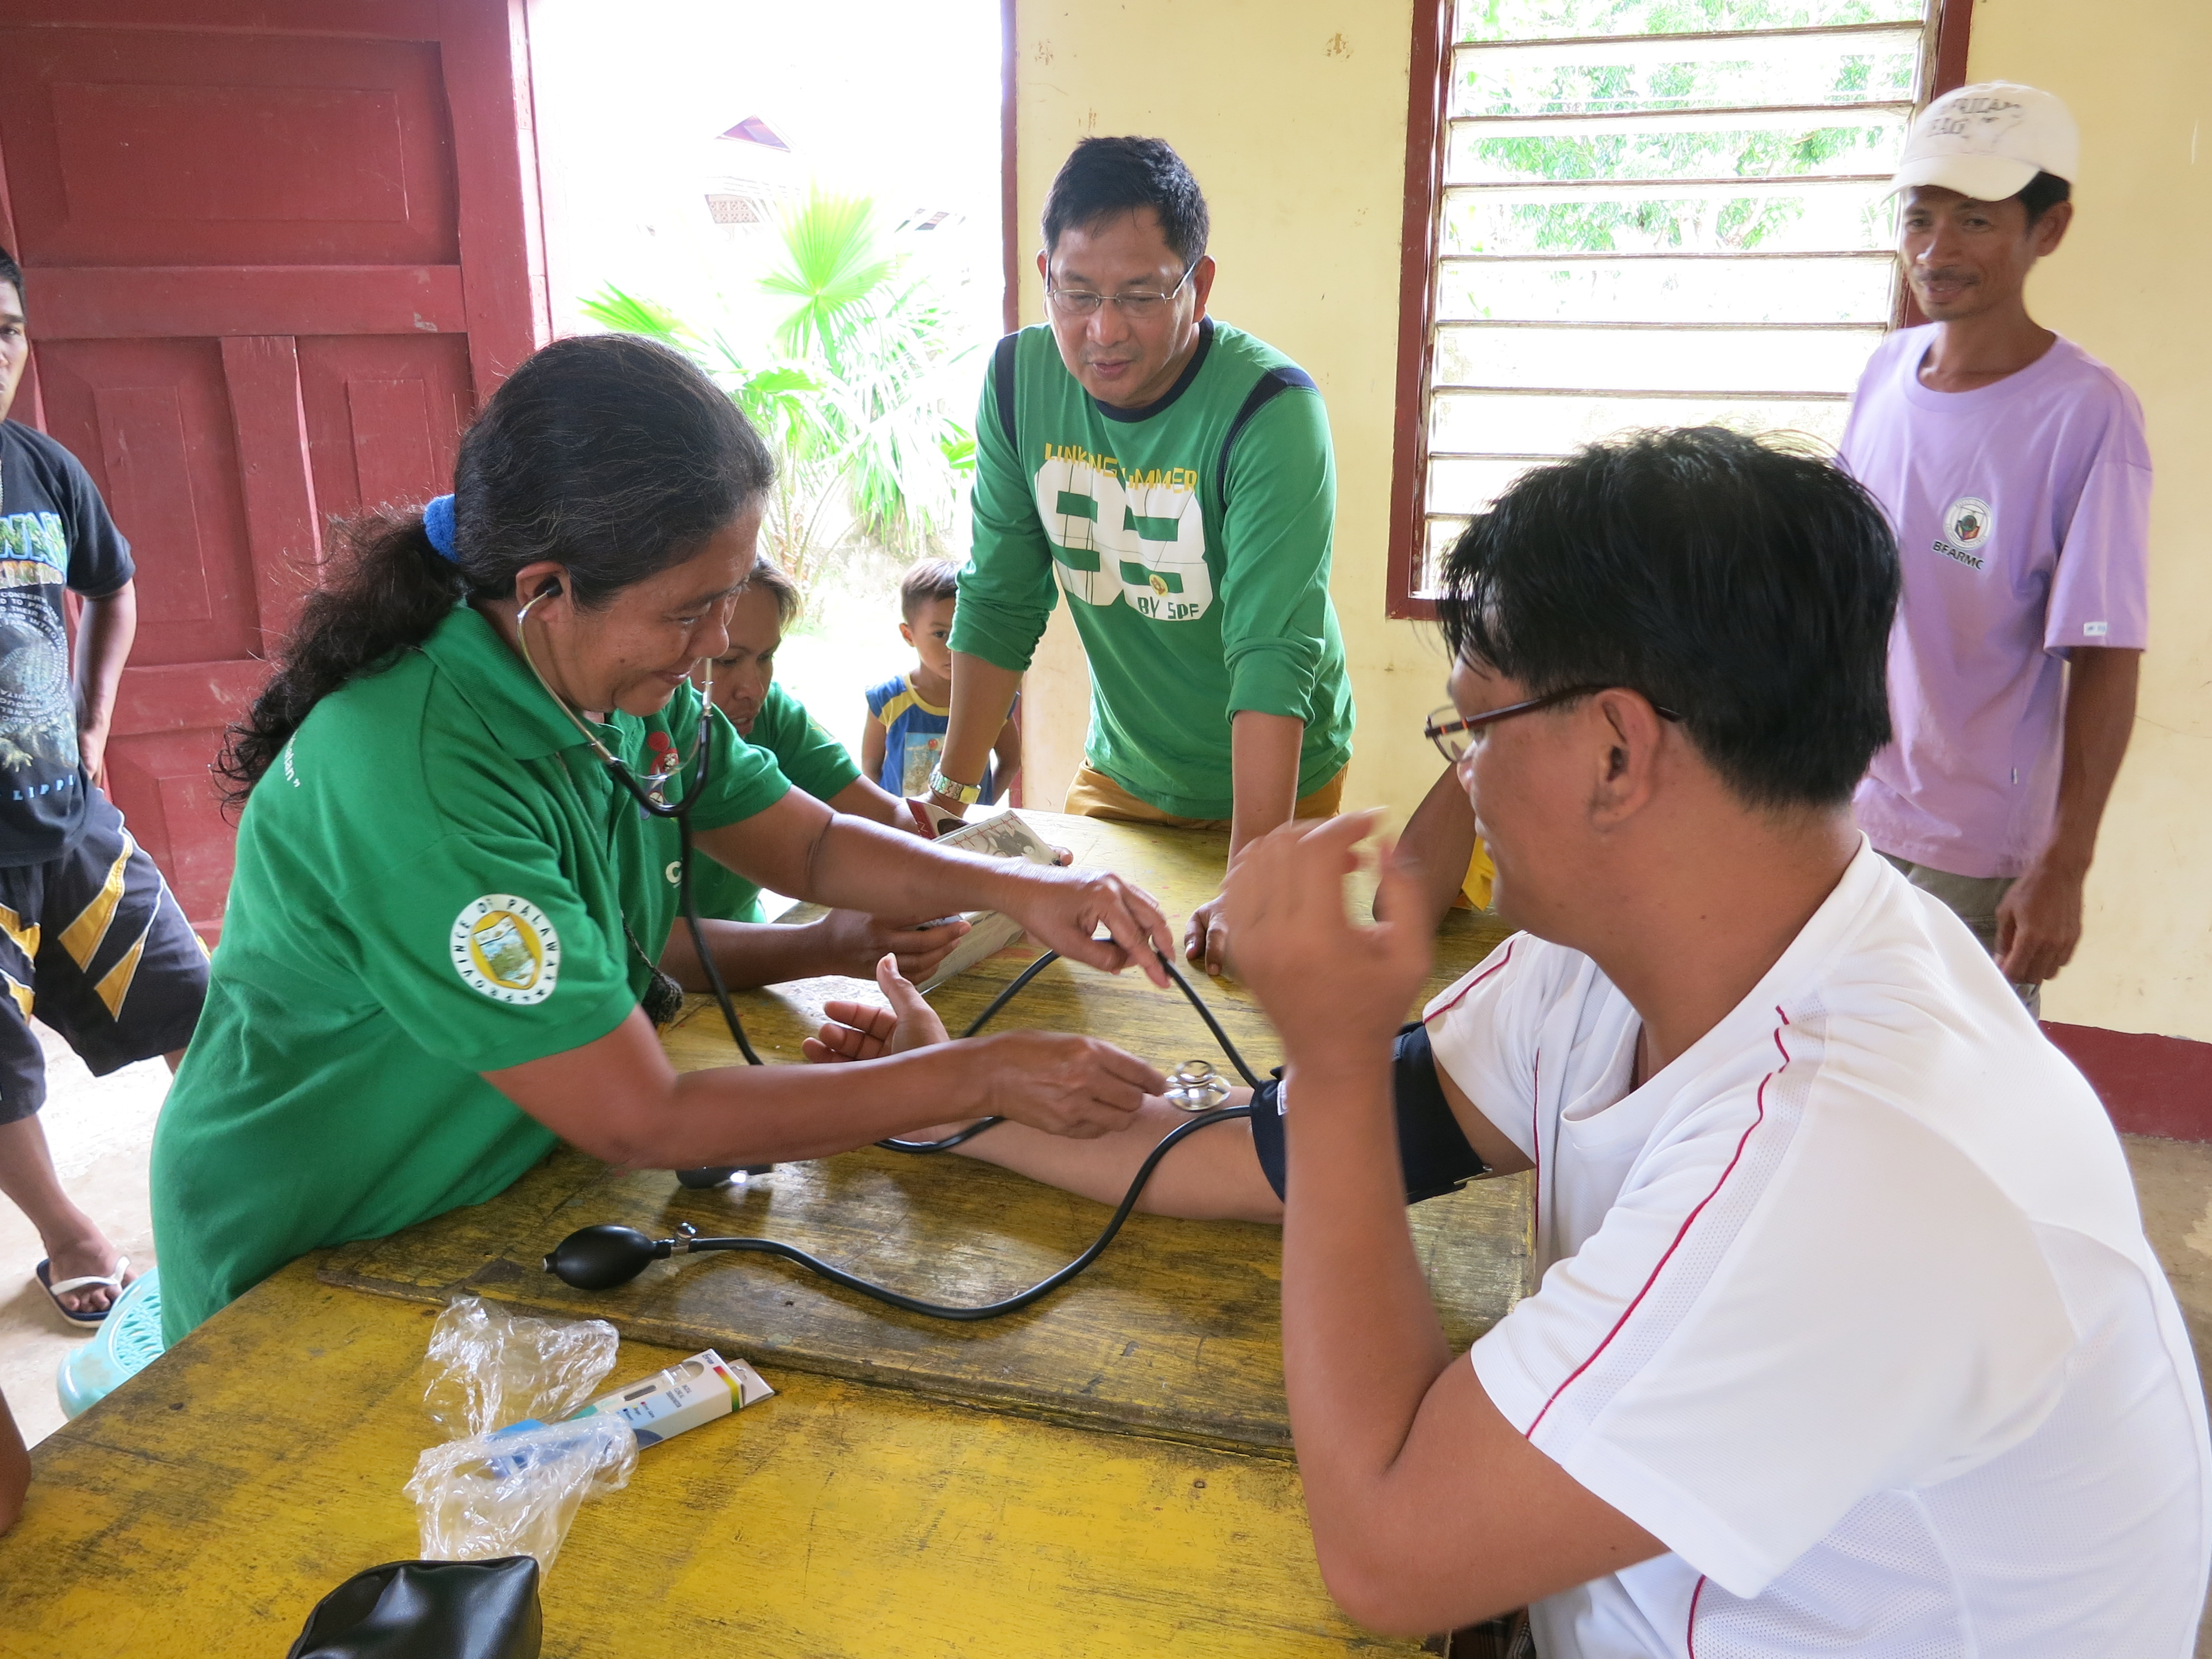 health check up in Taytay, Palawan